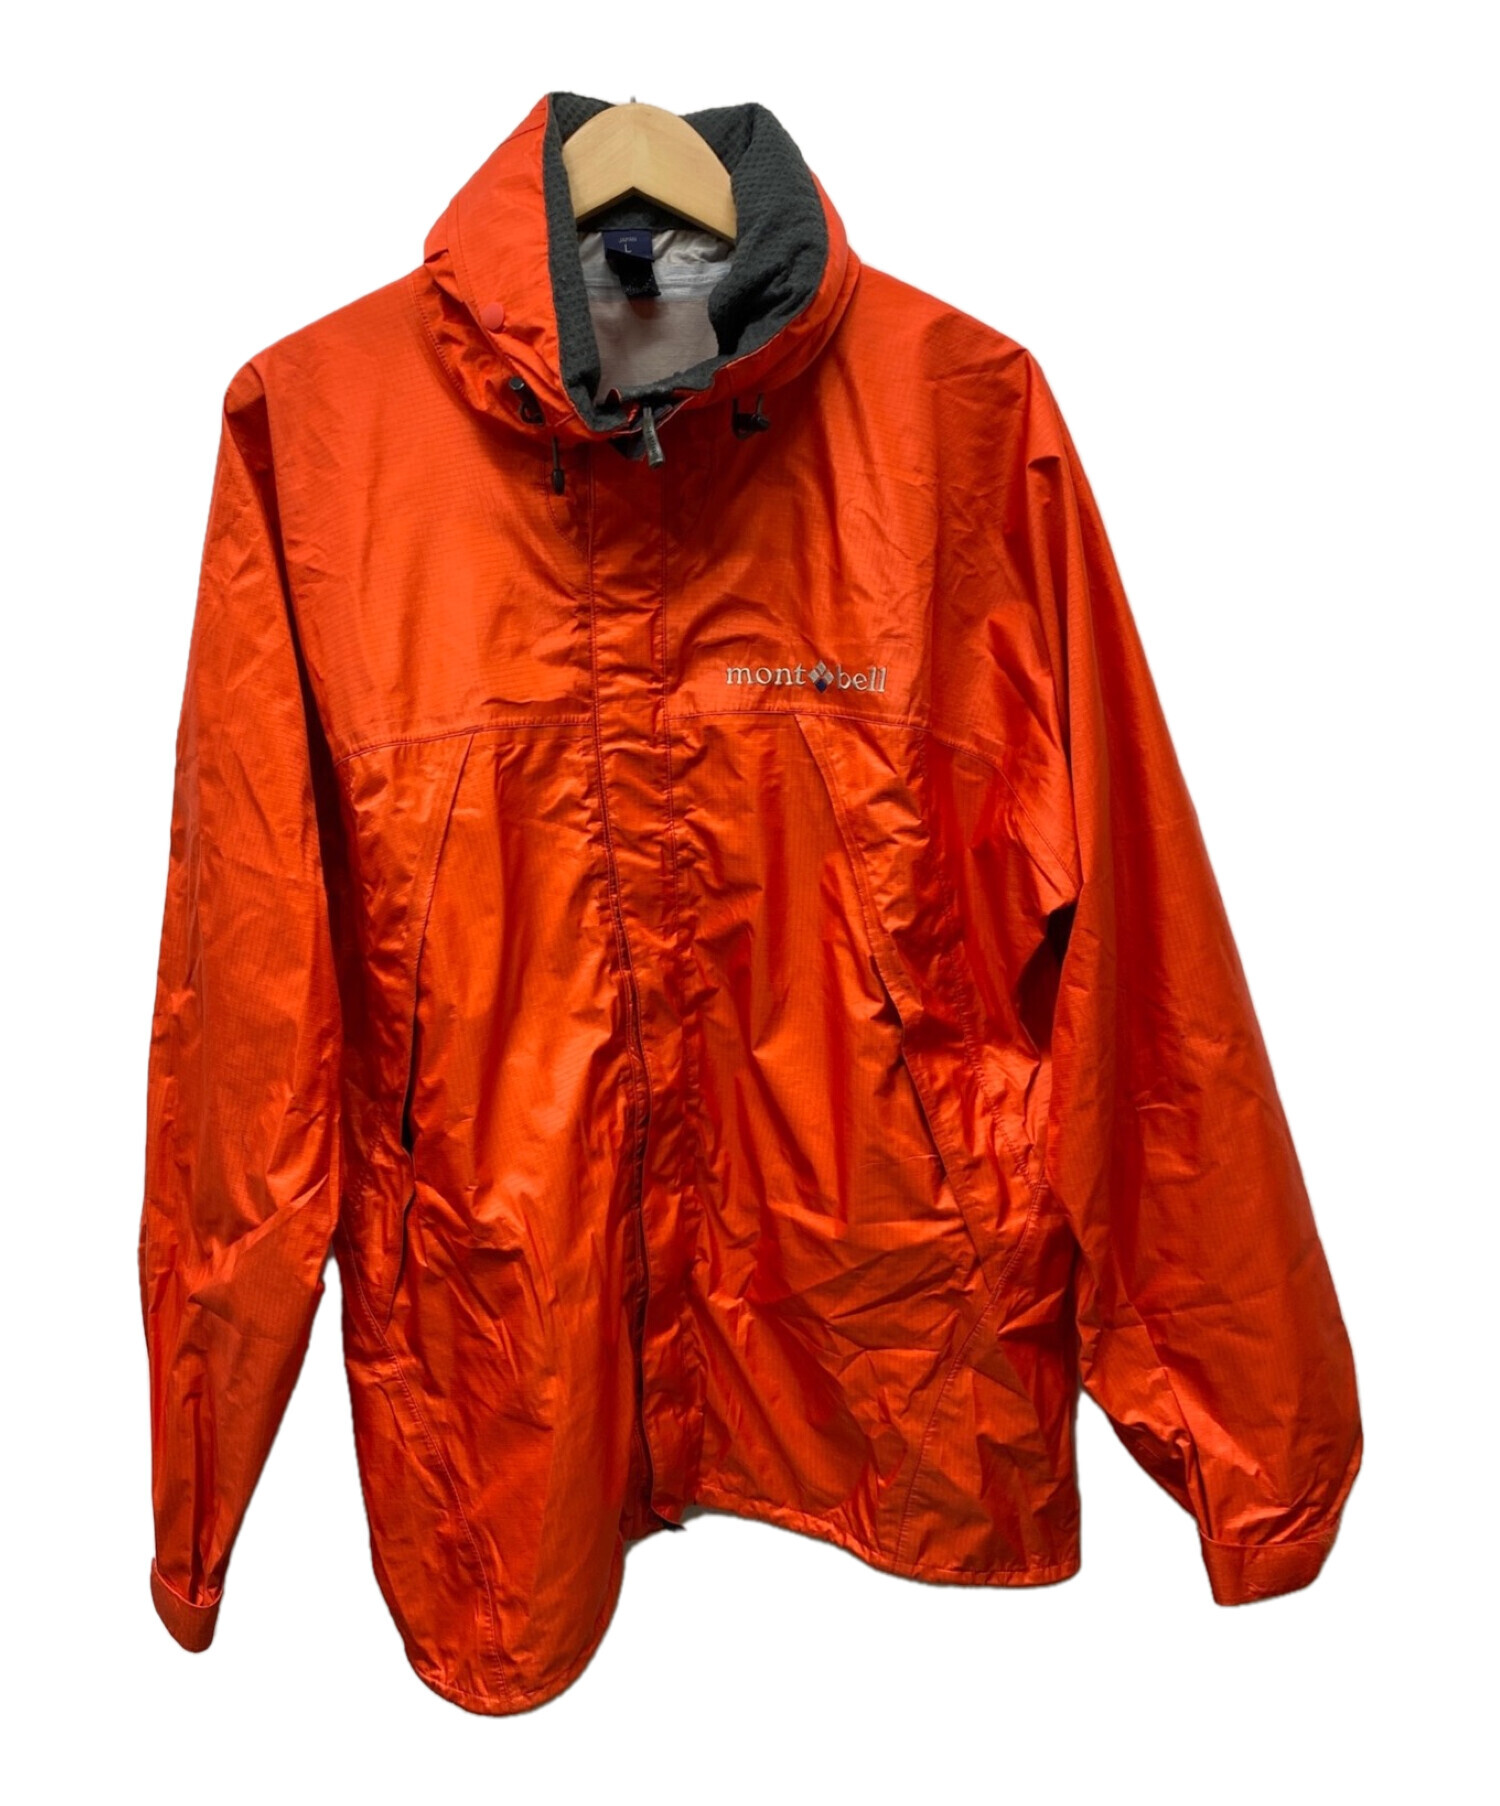 mont-bell (モンベル) ストームクルーザージャケット オレンジ サイズ:M